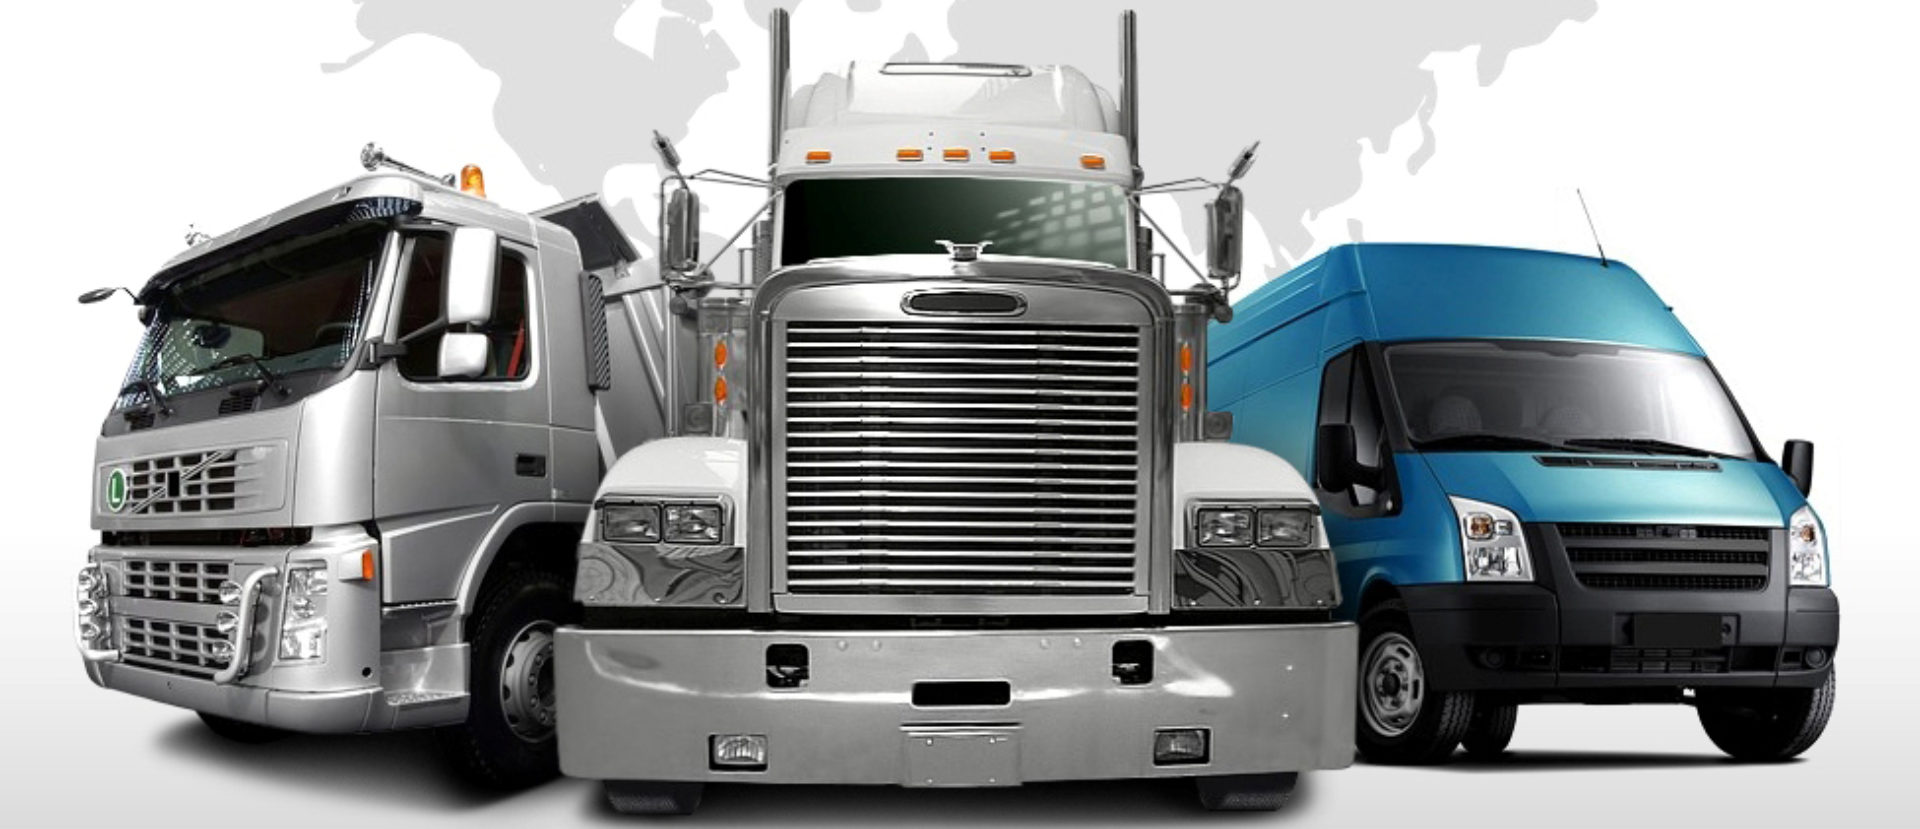 Фирмы грузовых автомобилей